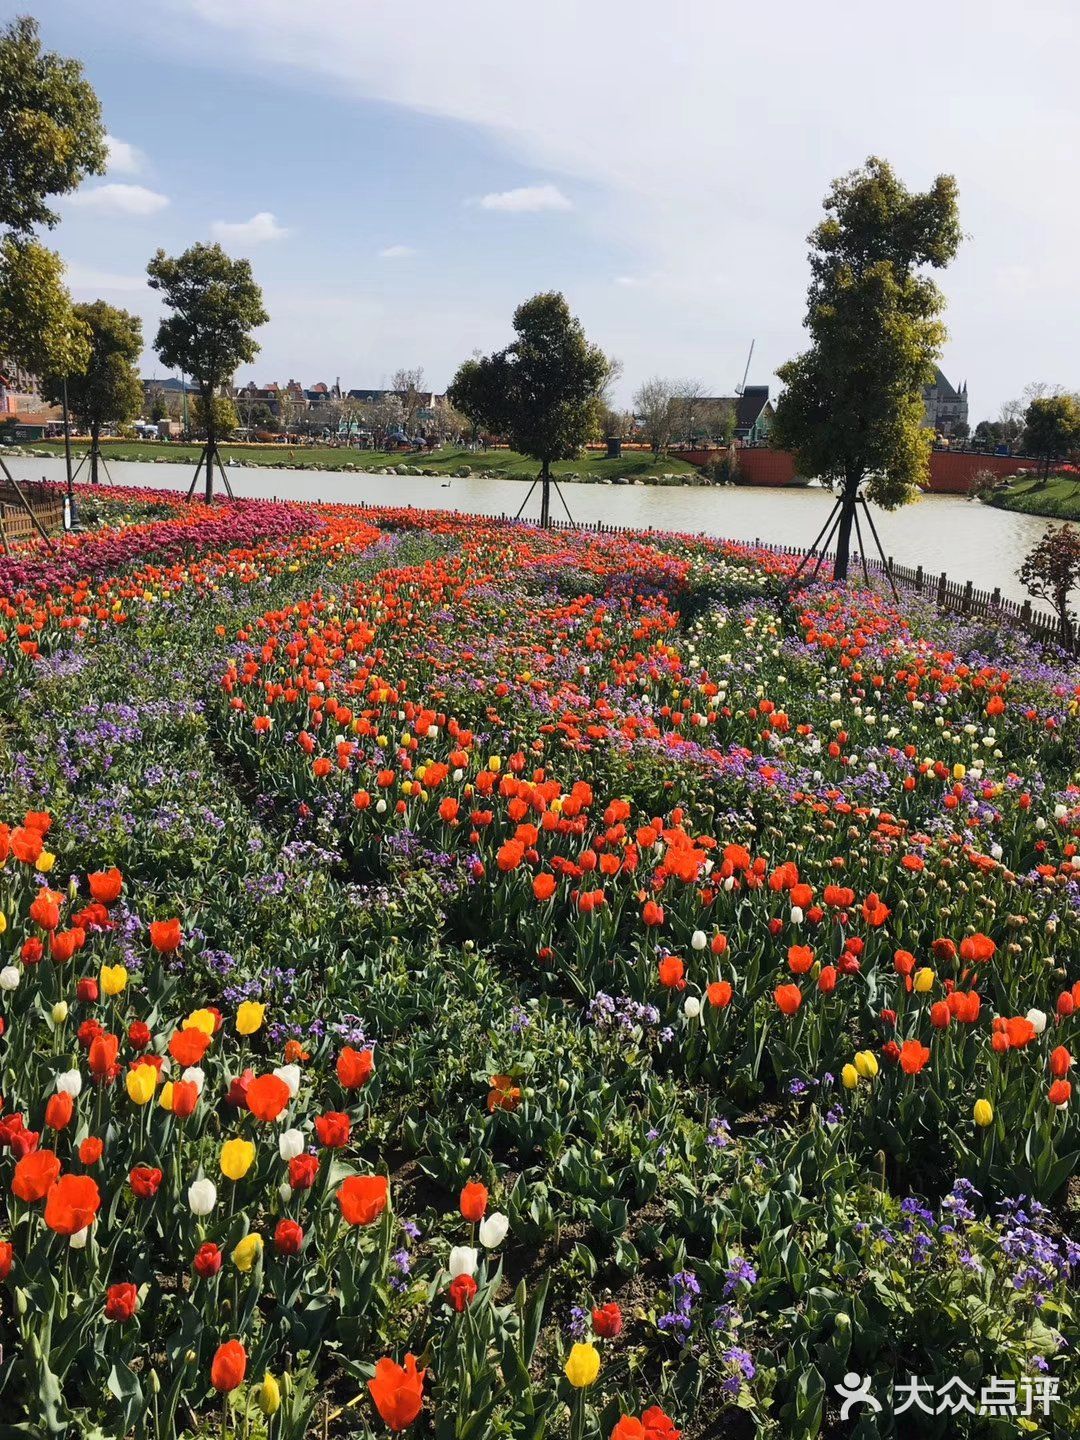 春天是看花的季节,每年四五月期间,位于北京国际鲜花港